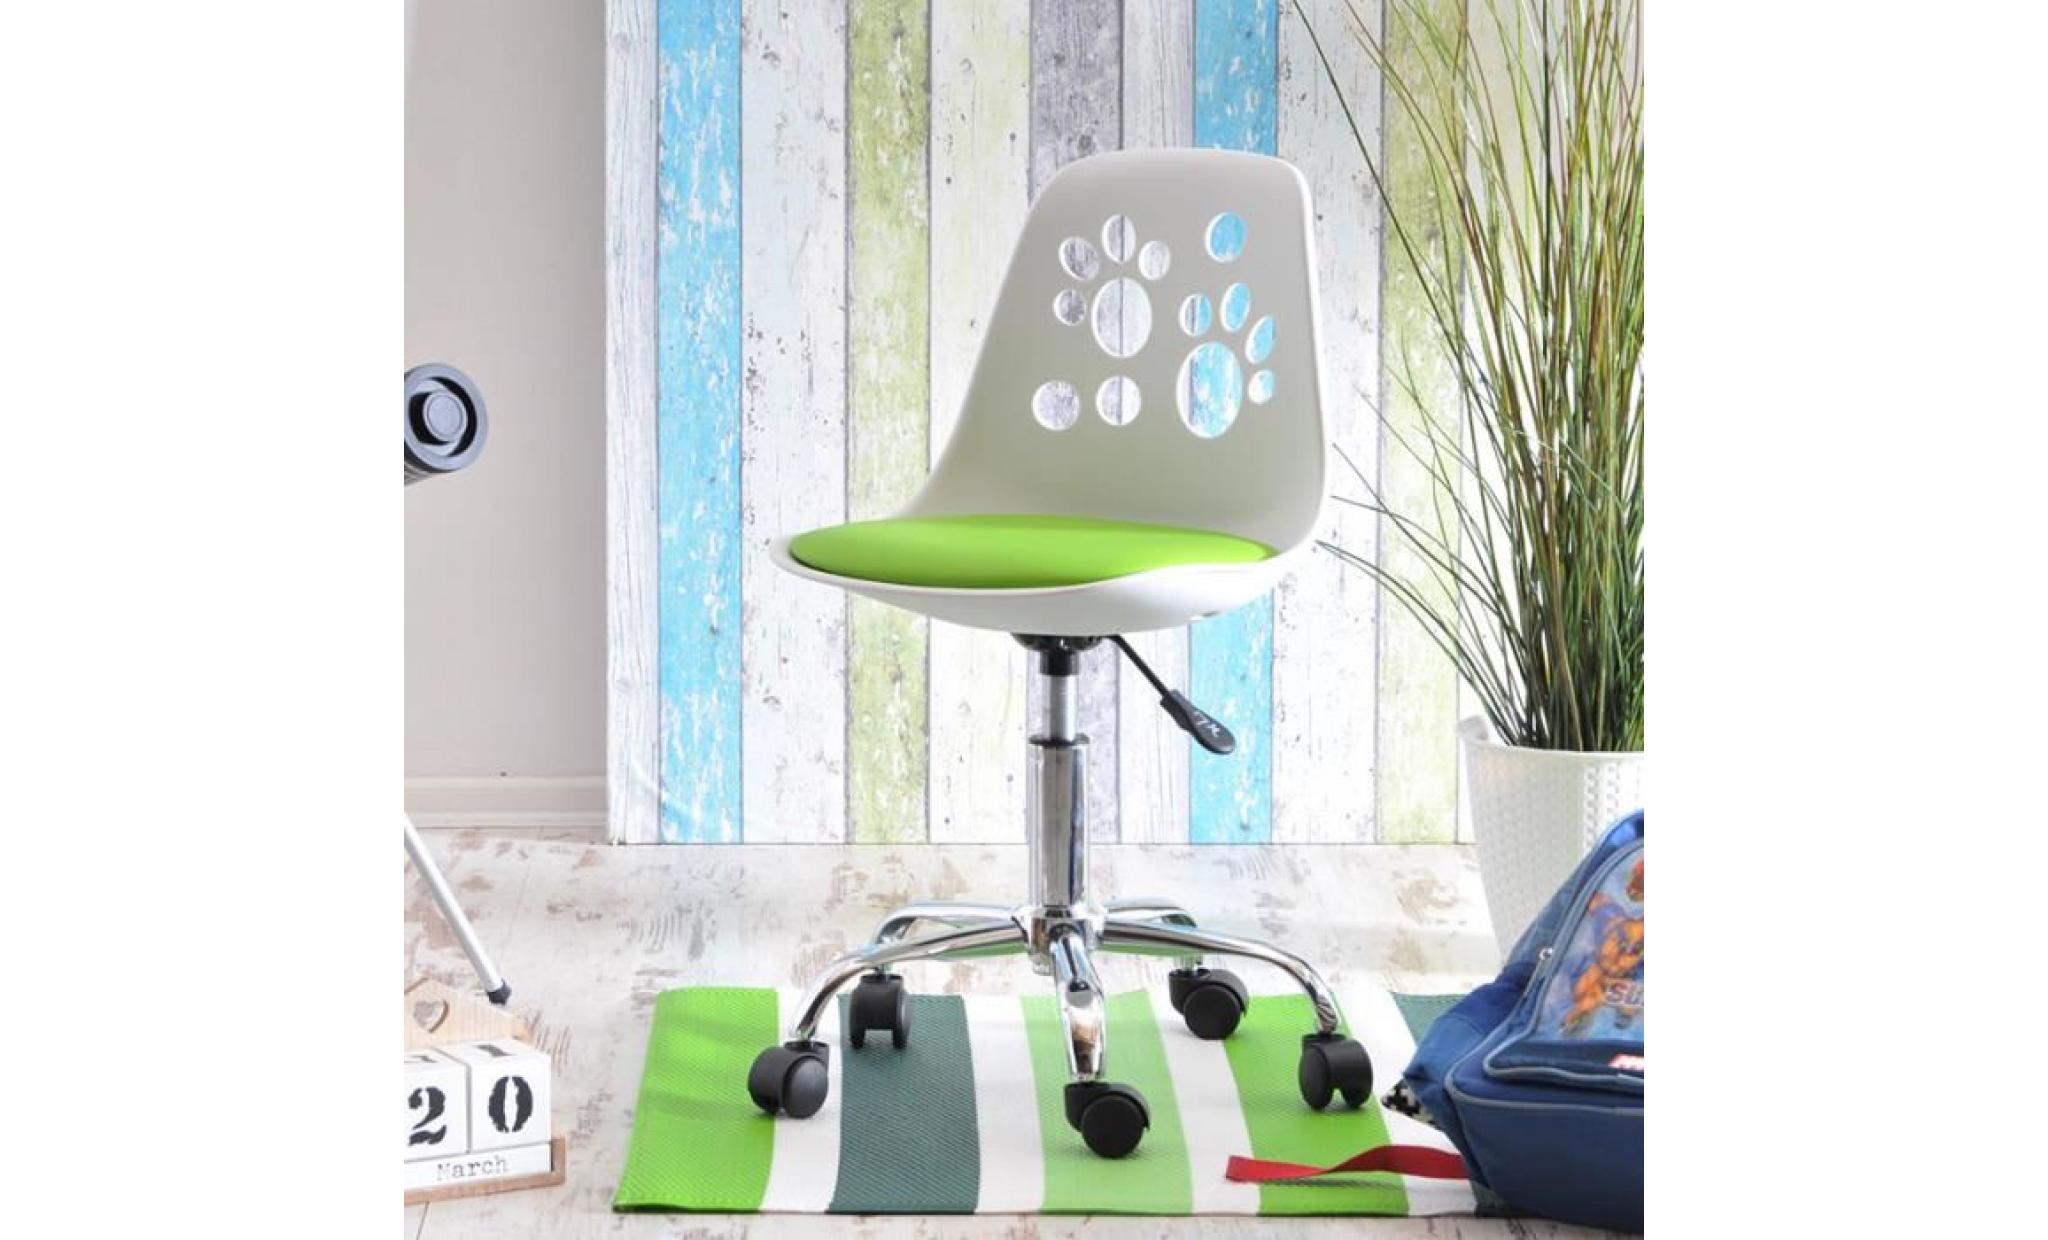 fauteuil d'enfant / chaise de bureau   foot   40 cm   blanc / vert   design moderne   réglable   pivotant pas cher